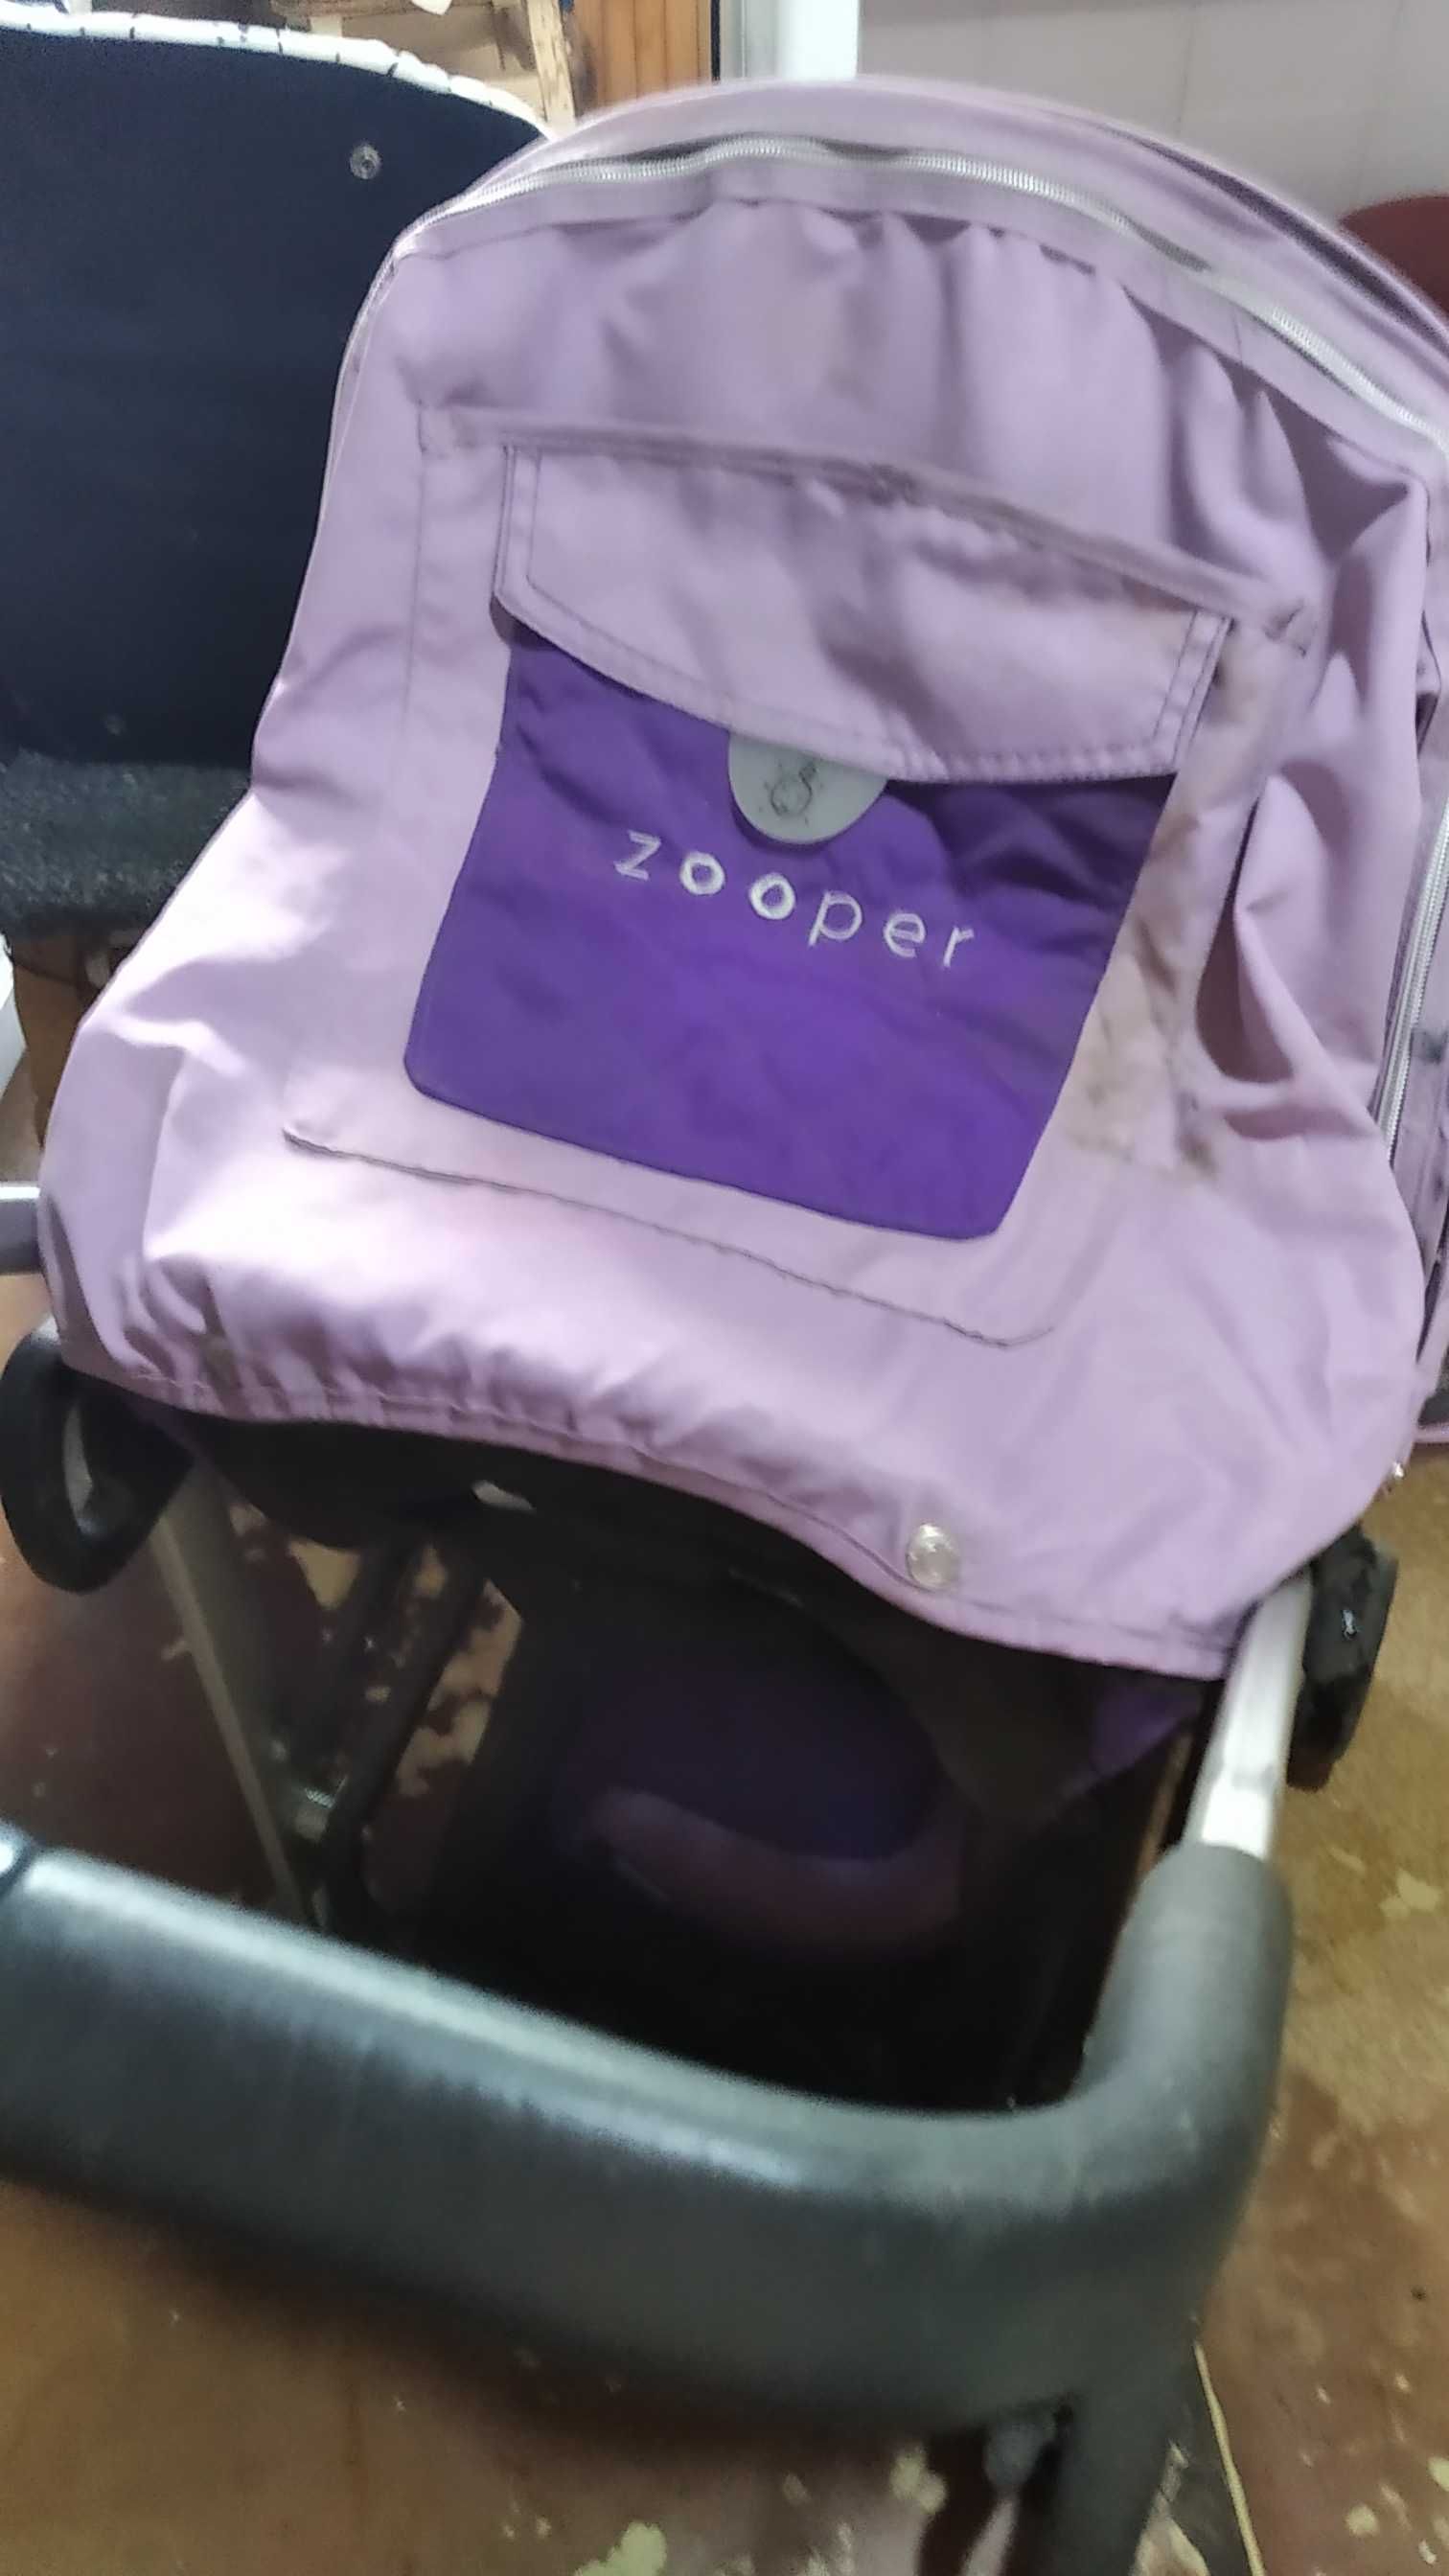 Дитяча коляска "Zooper" фіолетового кольору